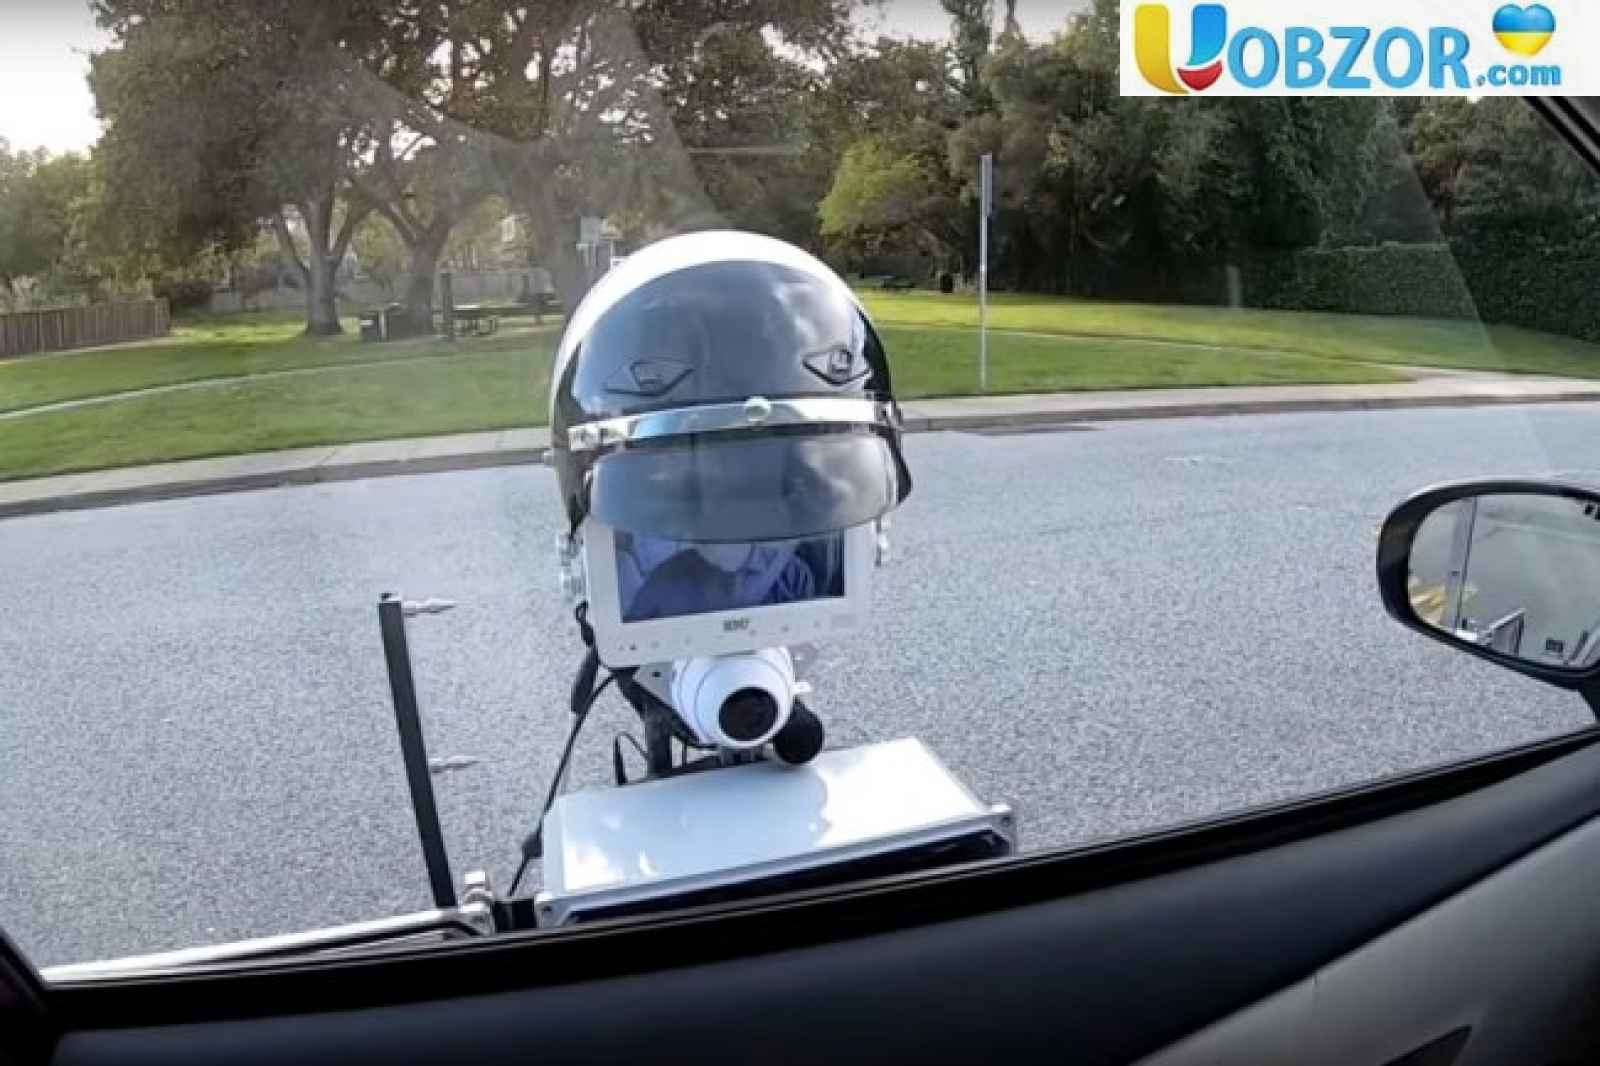 Робот поліцейський на вулицях Каліфорнії: перевіряє документи і виписує штраф